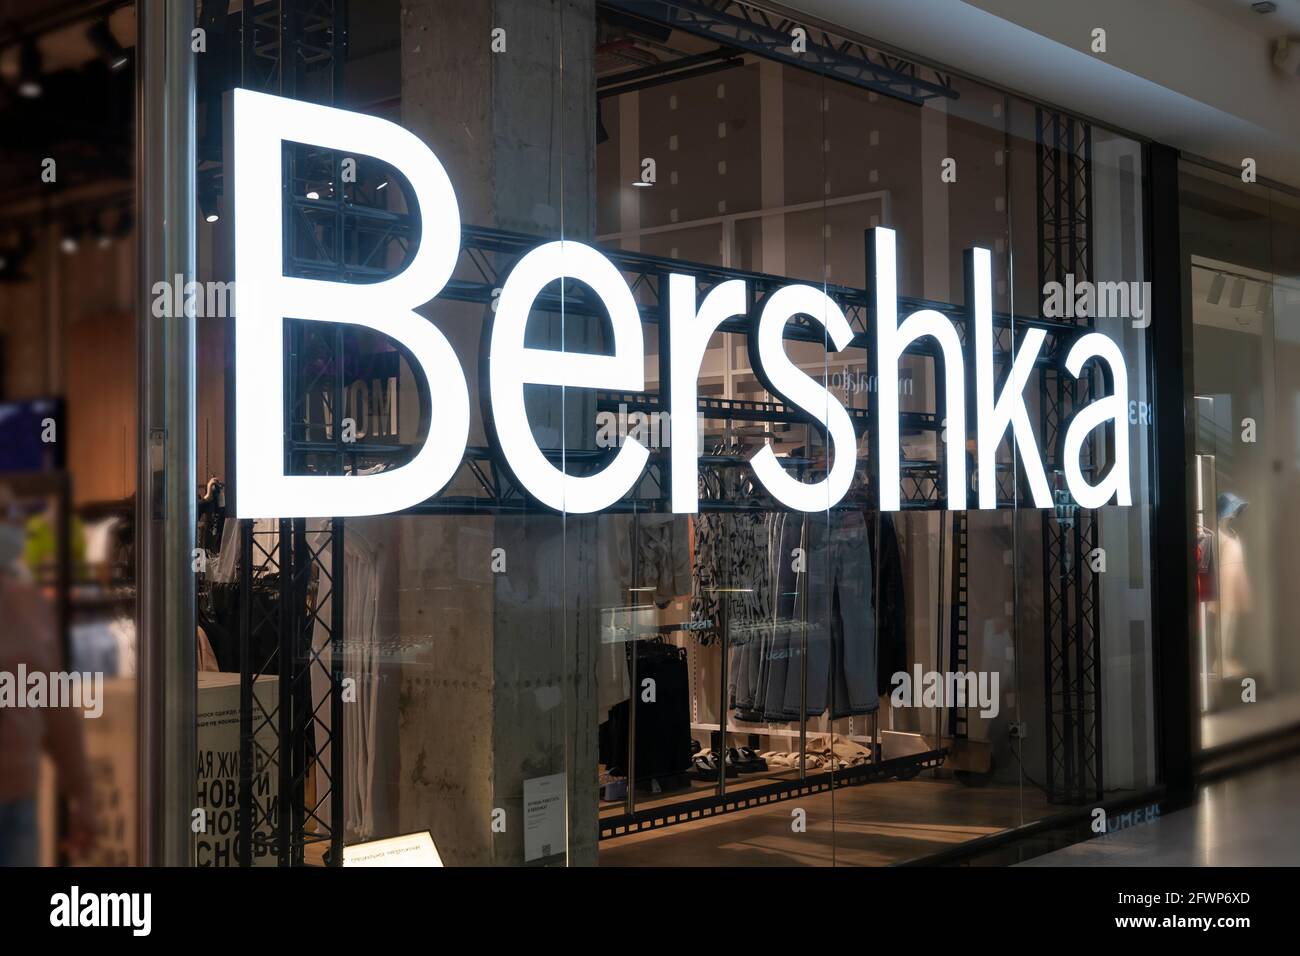 Entrada de la tienda bershka fotografías e imágenes de alta resolución -  Alamy